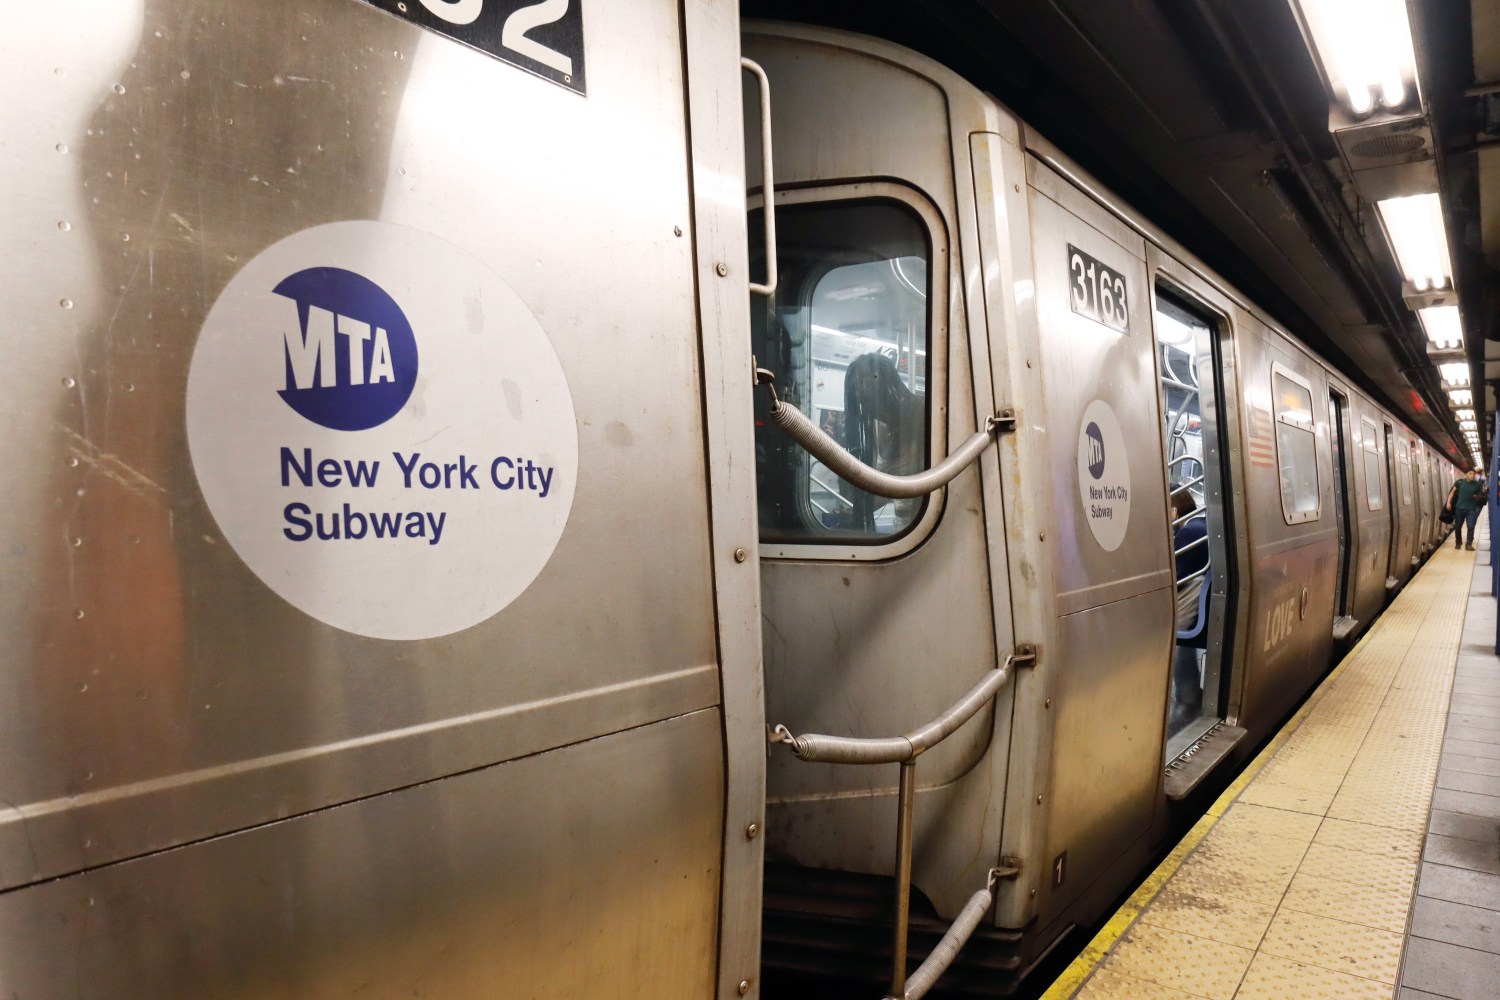 NYC boy, 15, dies subway surfing on Manhattan train